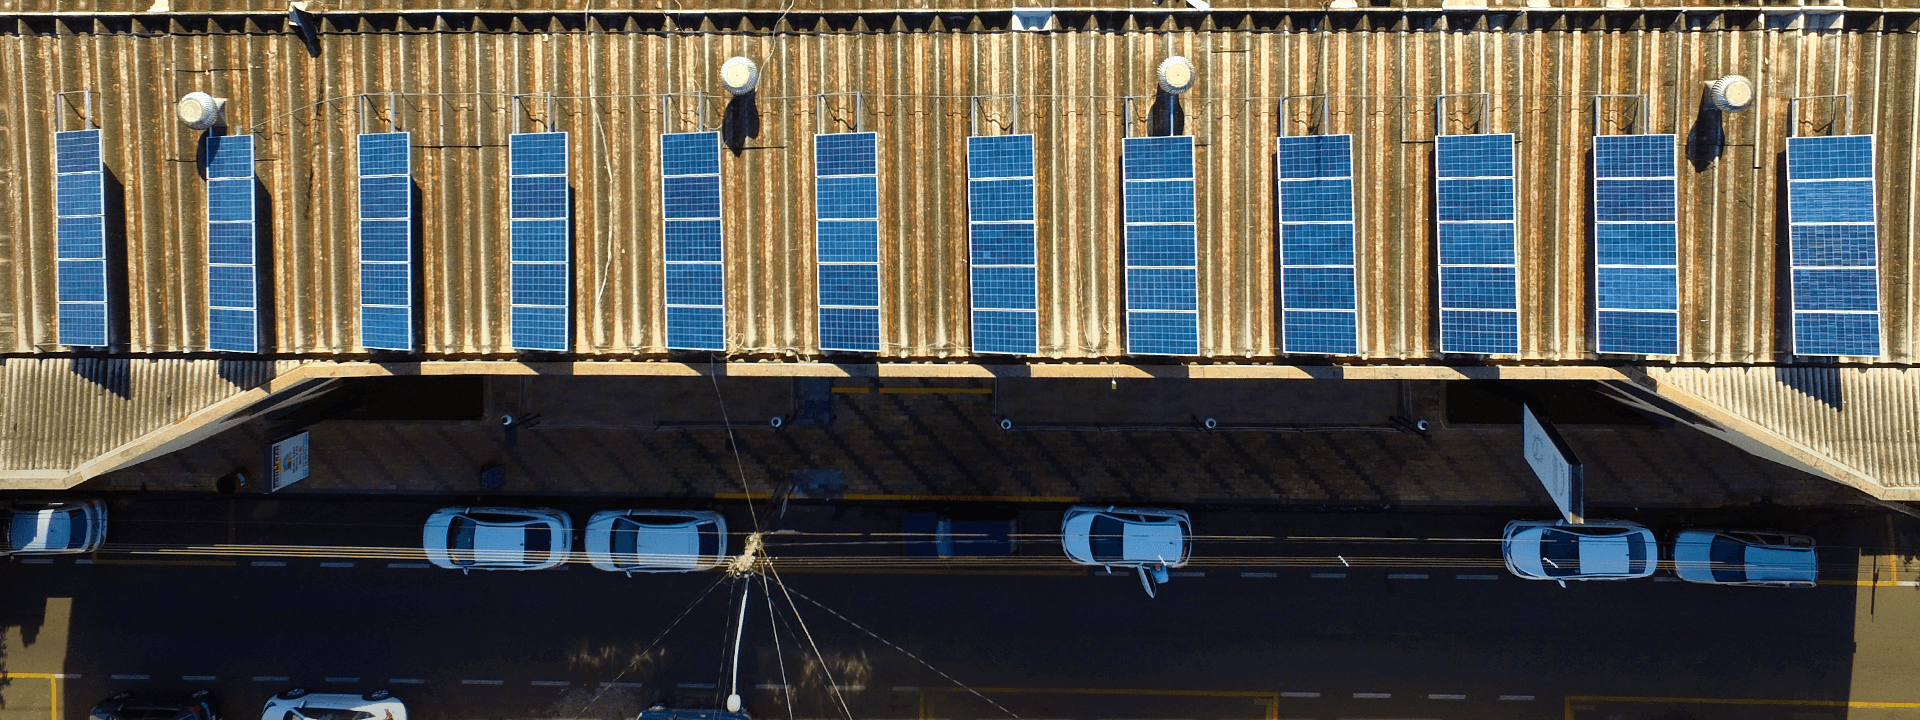 60 painéis solares